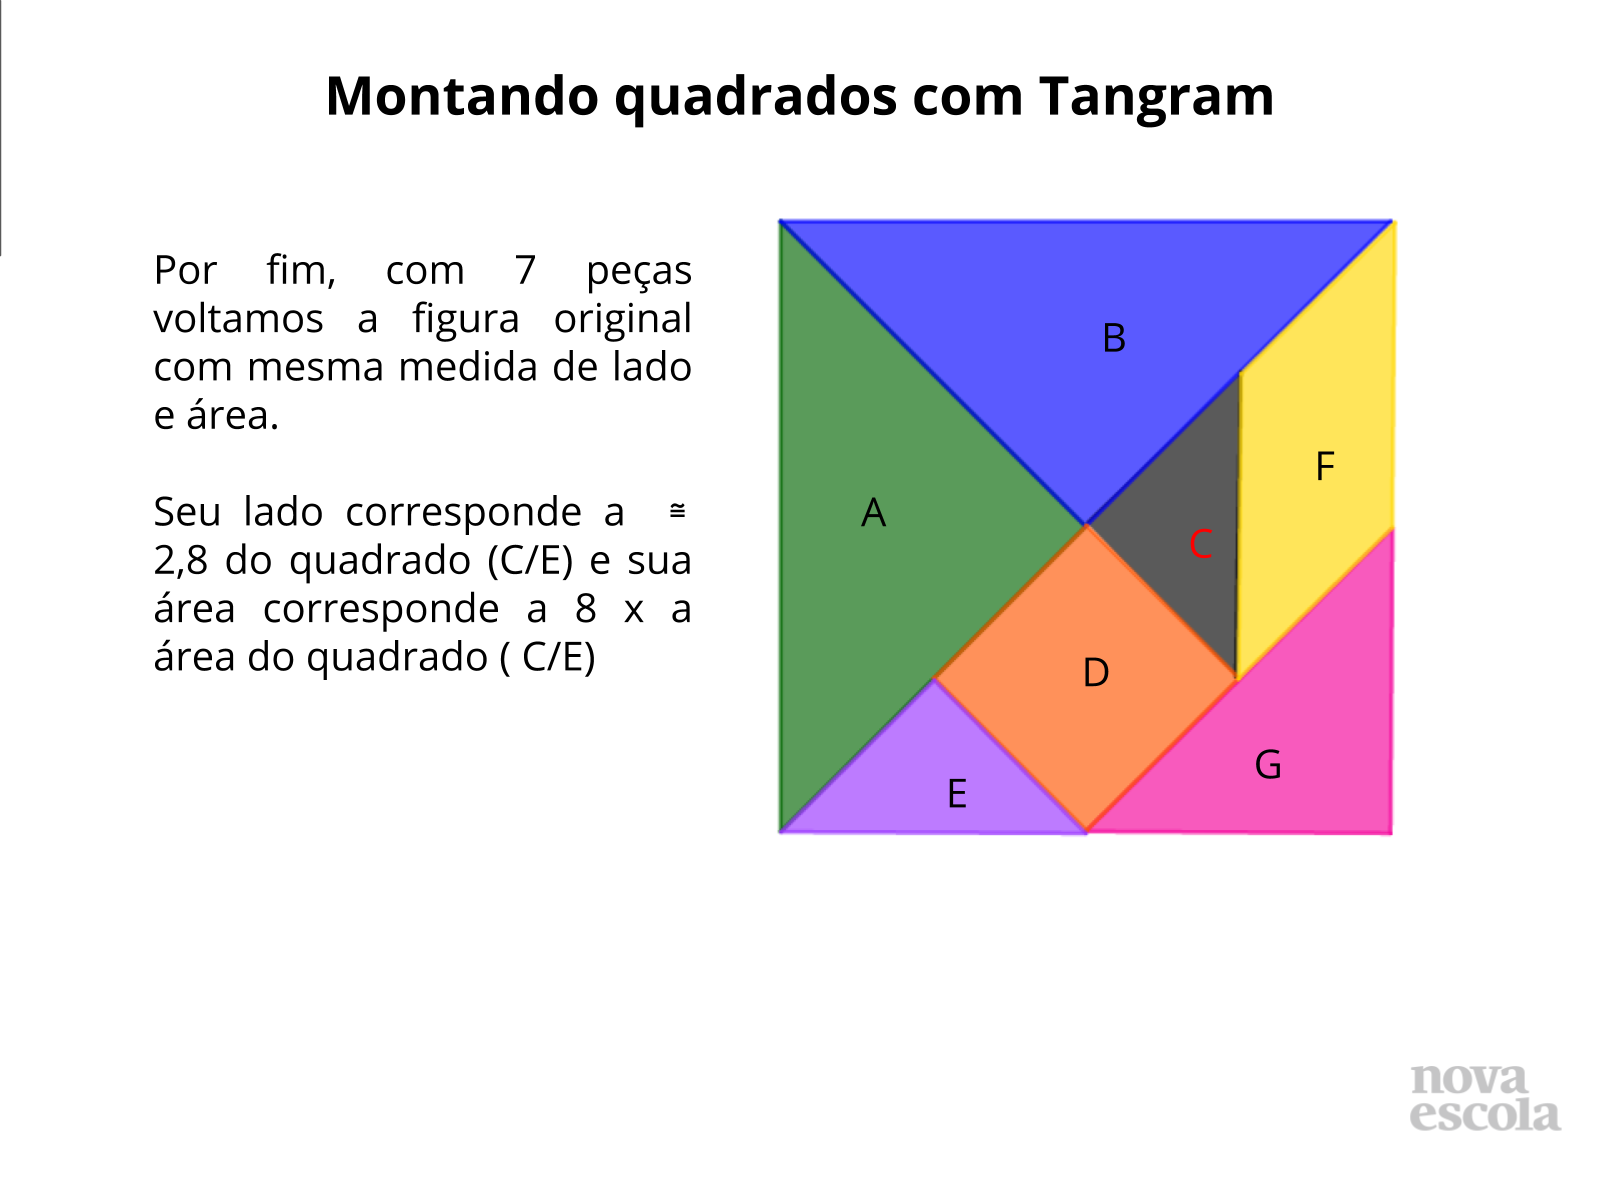 Montando quadrados com Tangram - Discussão da Solução (slides 13 ao 18)